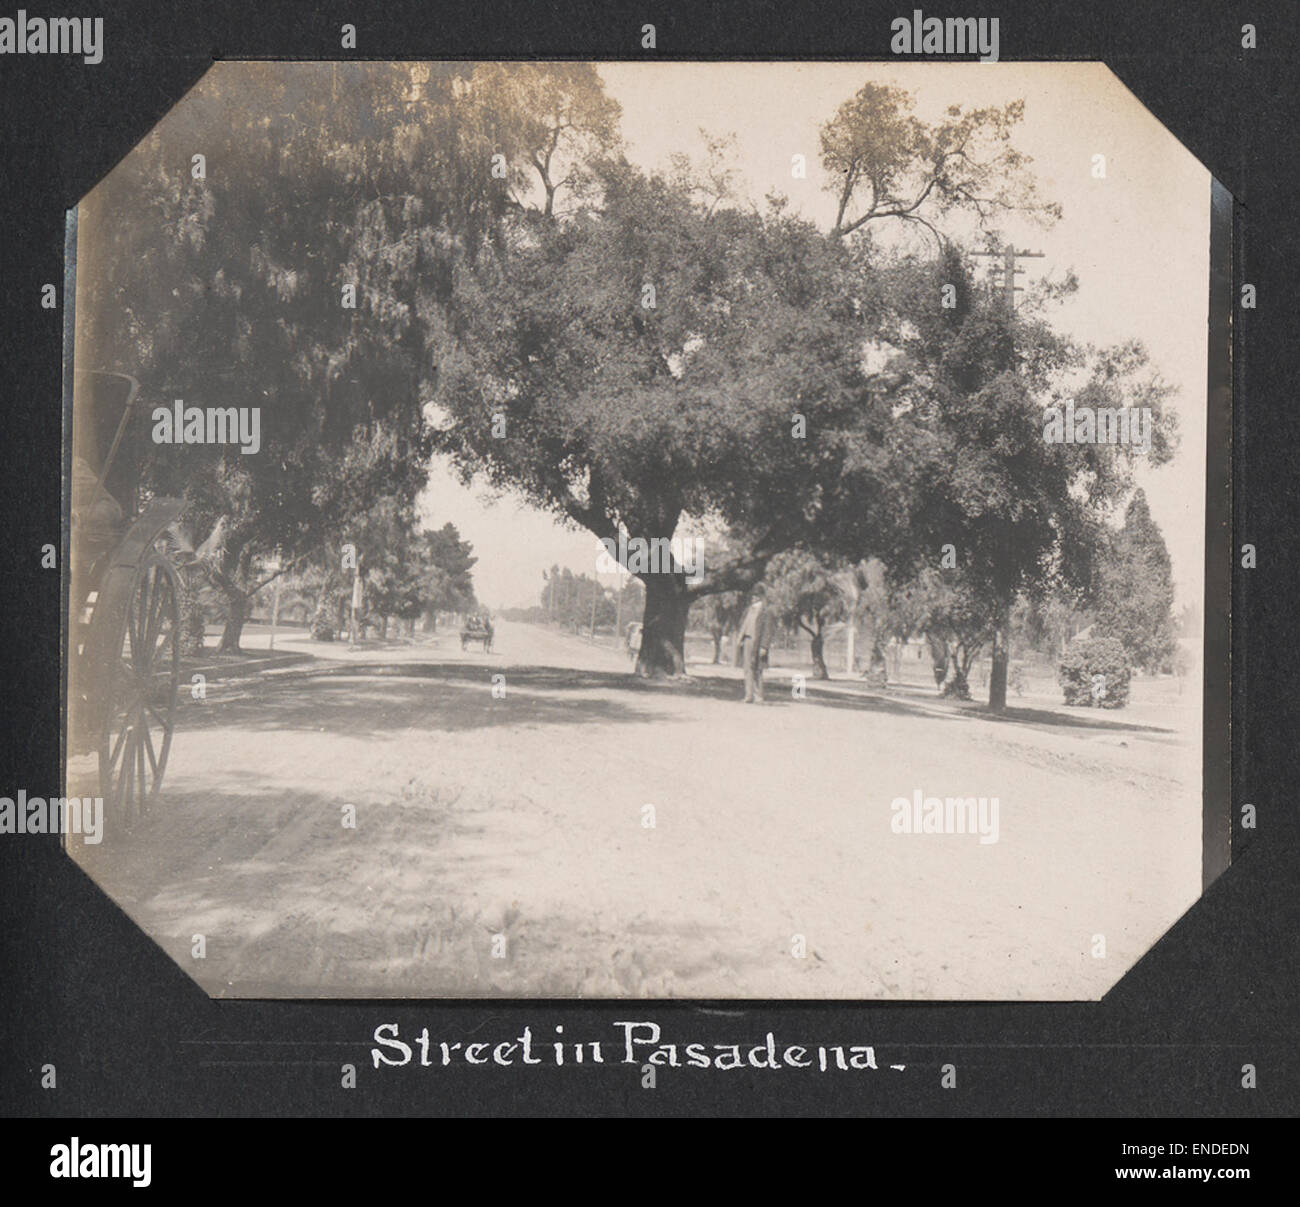 Street in Pasadena. Stock Photo